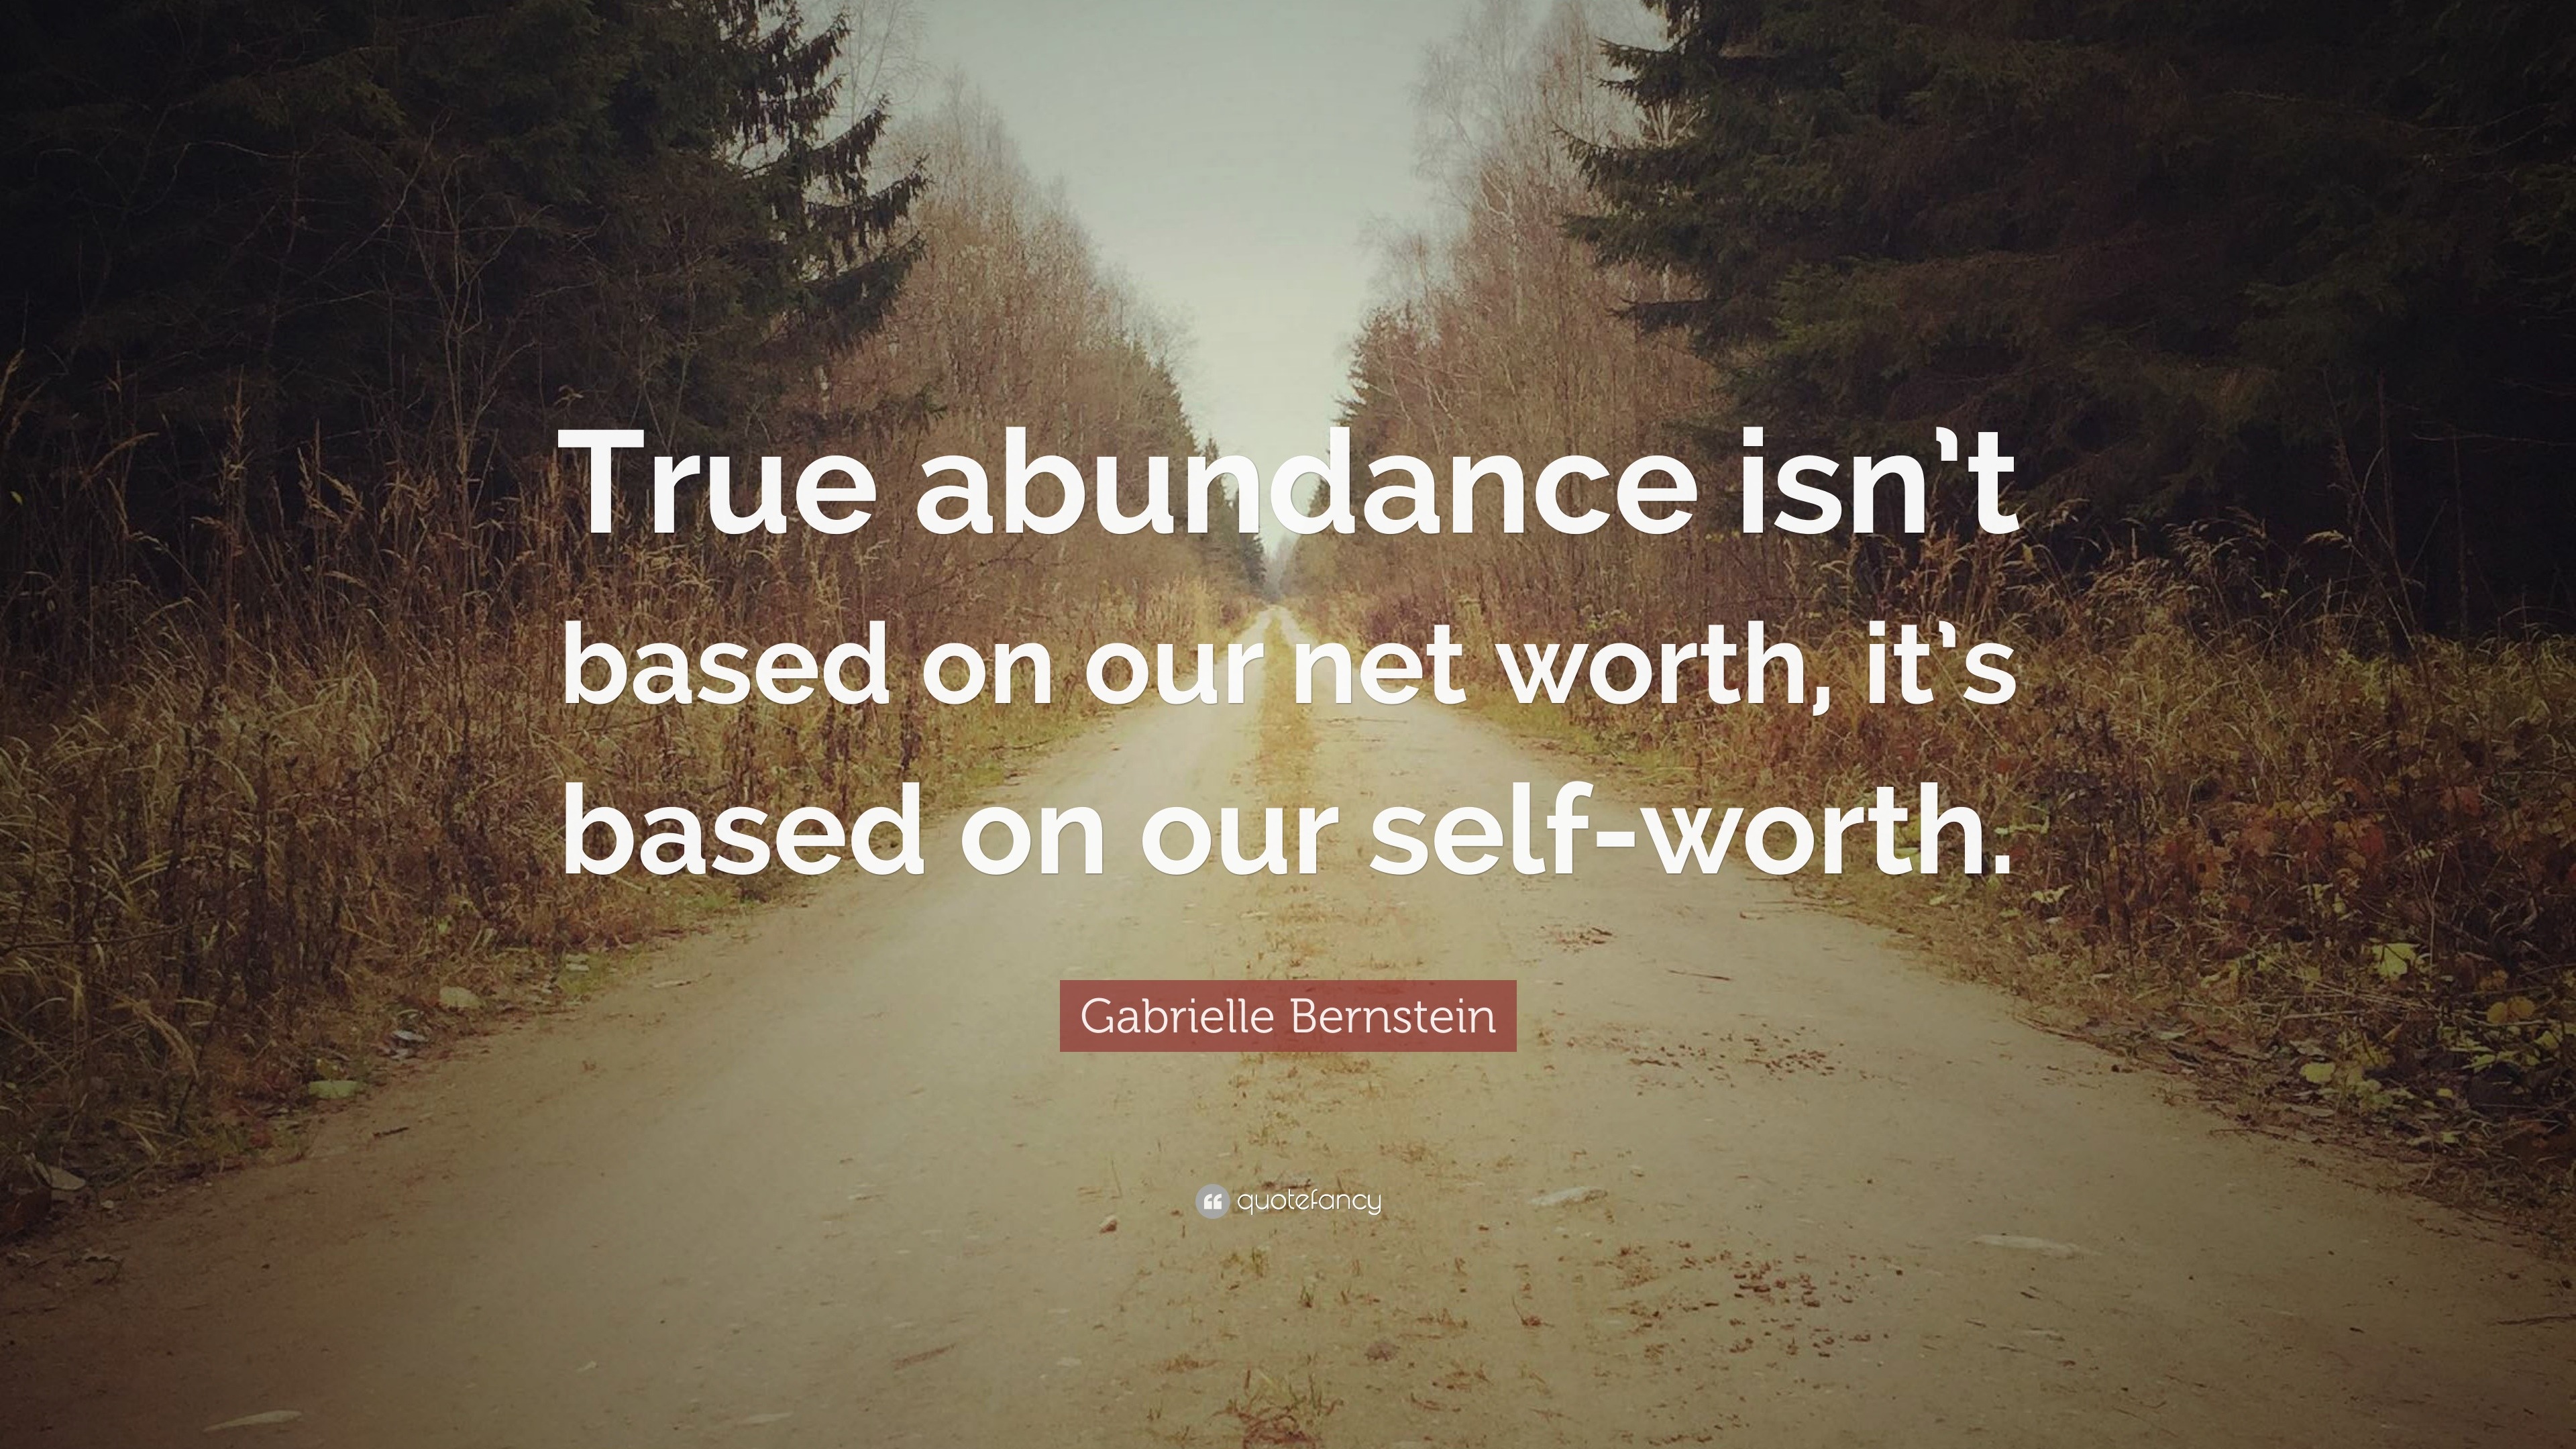 Gabrielle Bernstein Quote: “True abundance isn’t based on our net worth